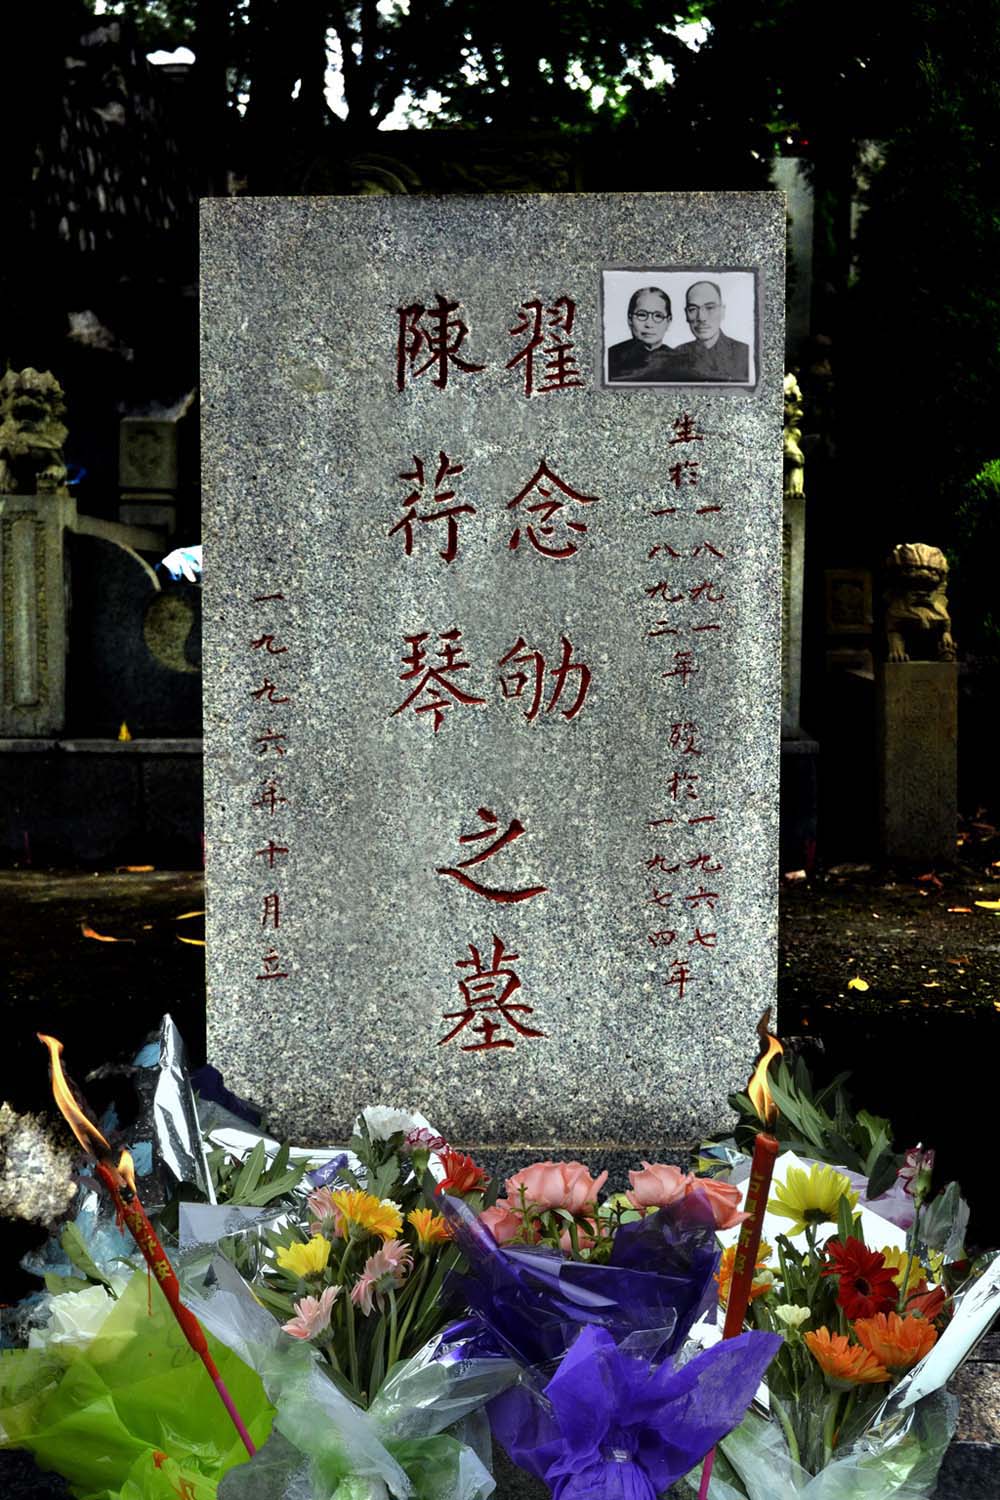 加瓷像后的柳州公墓中的翟念劬老先生墓碑